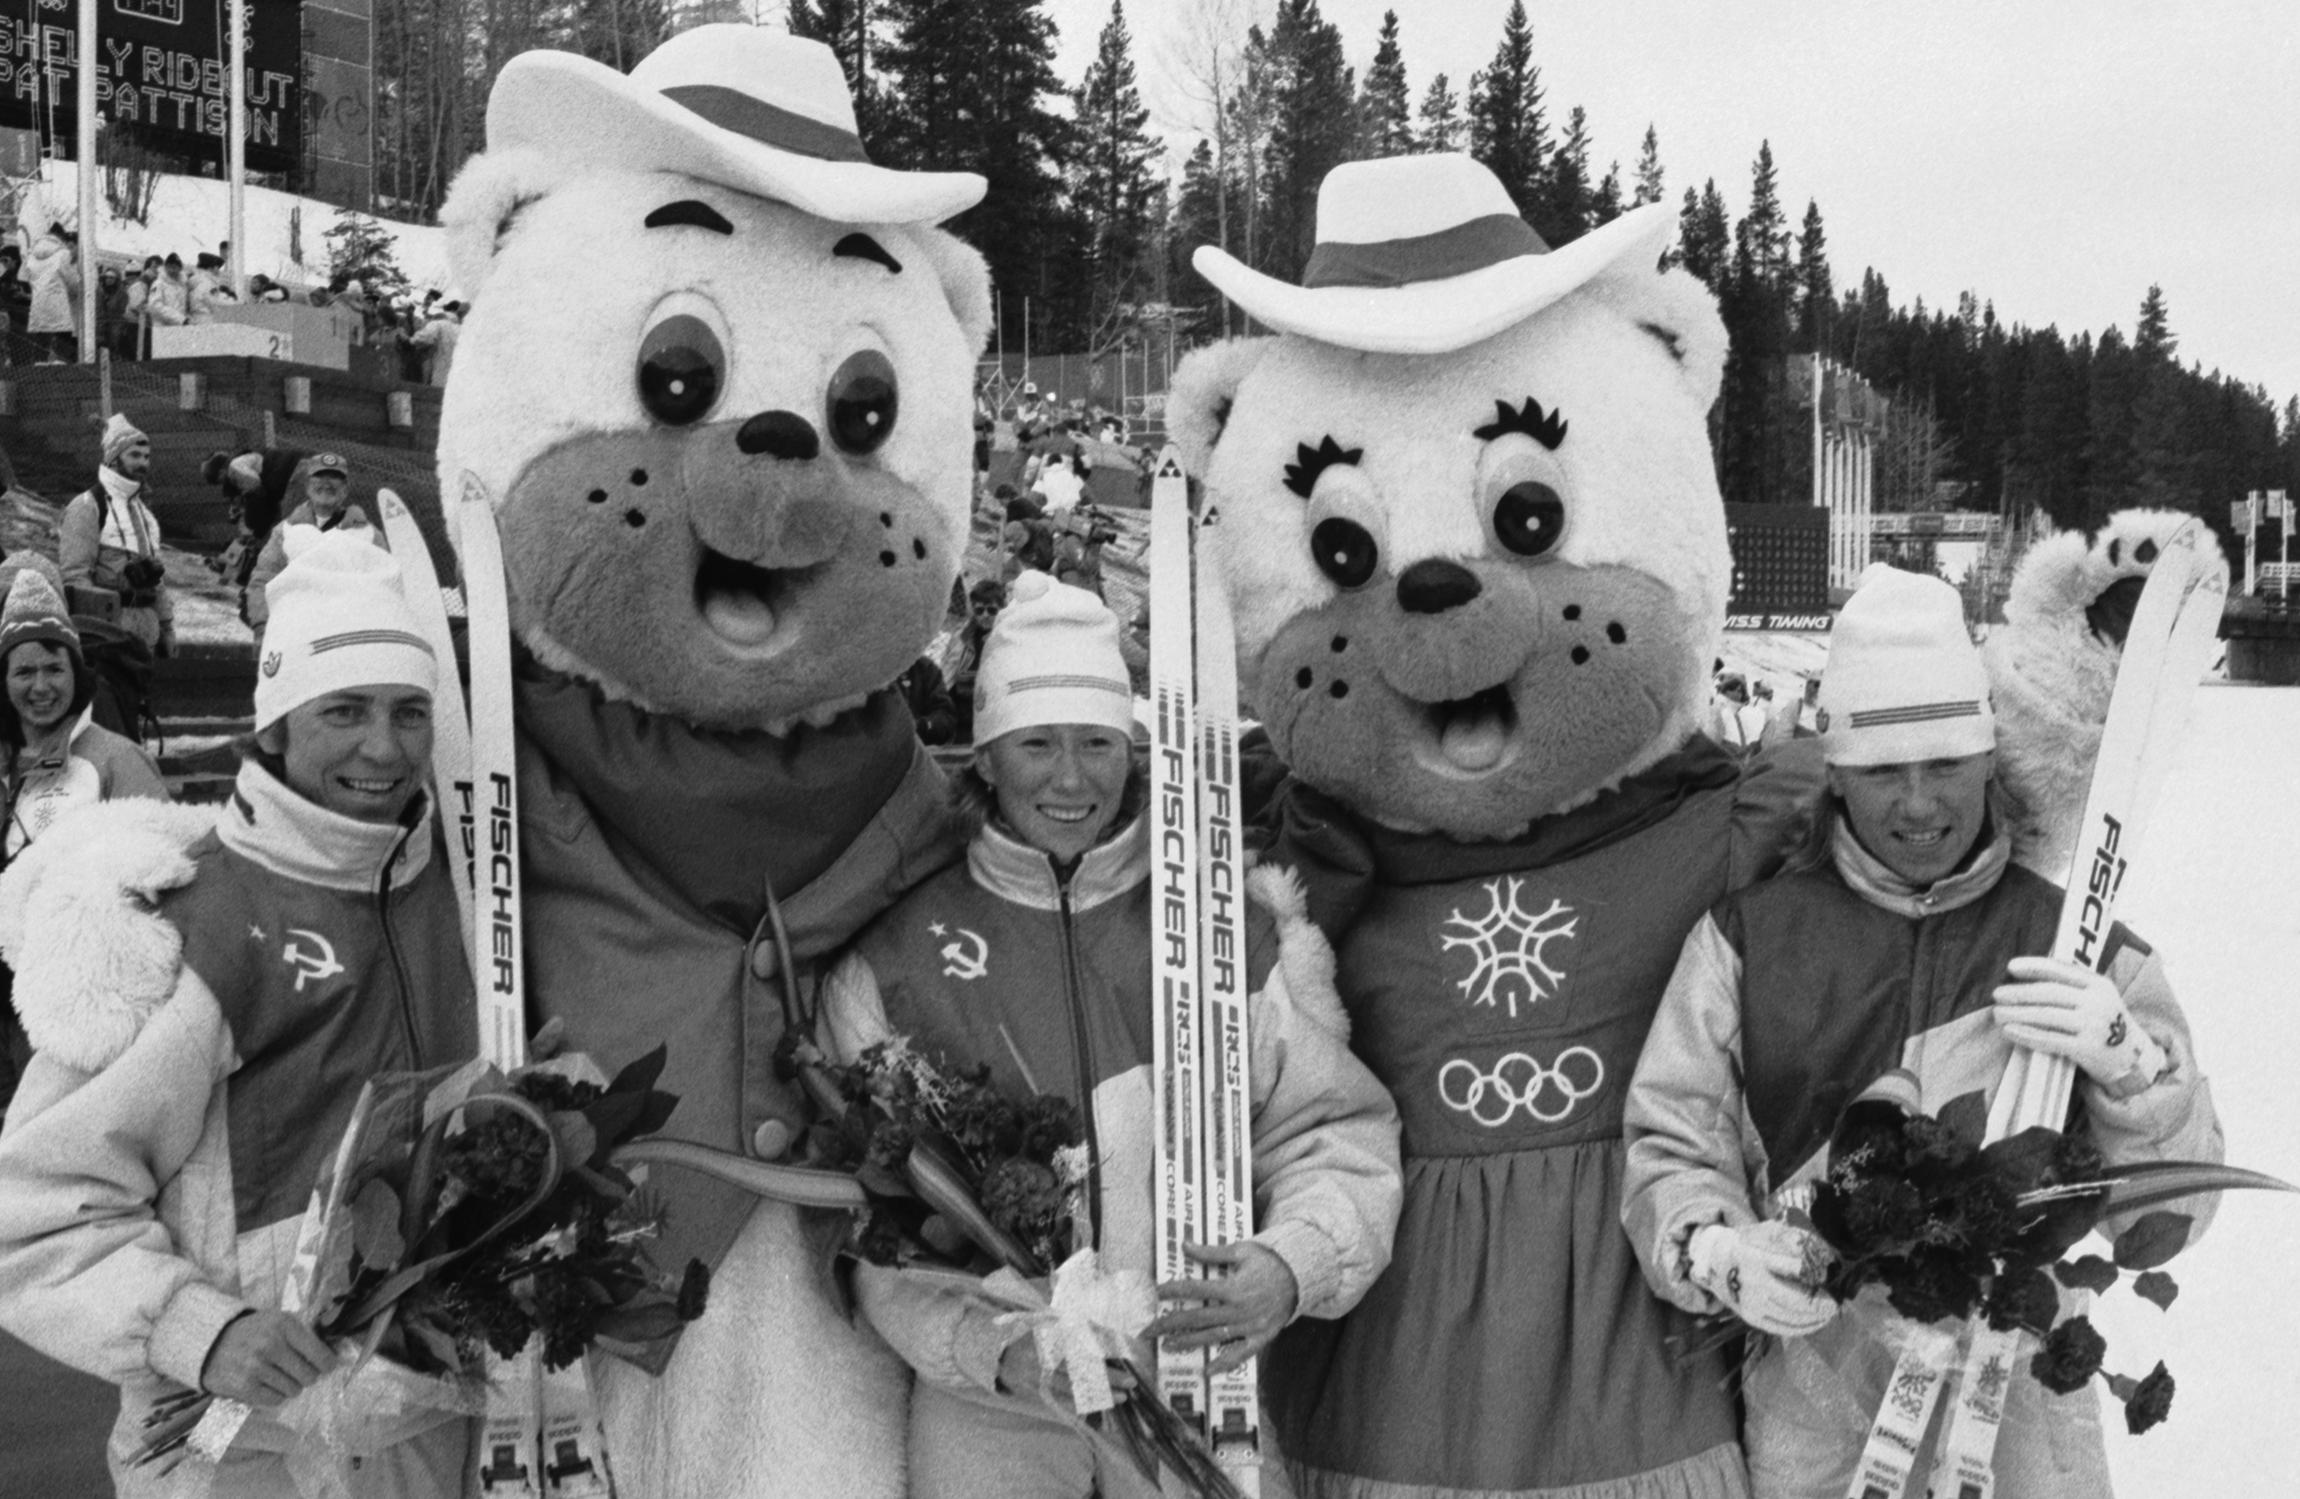 В 1988 году на ведущих ролях в сборной СССР были другие лыжницы&nbsp;&mdash; Тамара Тихонова и Вида Венцене. На Играх в Калгари они победили в индивидуальных гонках (20 км и 10&nbsp;км соответственно). Резцова&nbsp;же пришла второй в гонке на 20 км, но стала олимпийской чемпионкой в составе женской эстафетной команды.

На фото: 25 февраля 1988&nbsp;года. Канада. Калгари. Лыжные гонки на 20 км&nbsp;среди женщин. Победительницы (слева направо): Раиса Сметанина, Тамара Тихонова и Анфиса Резцова с талисманами Игр.